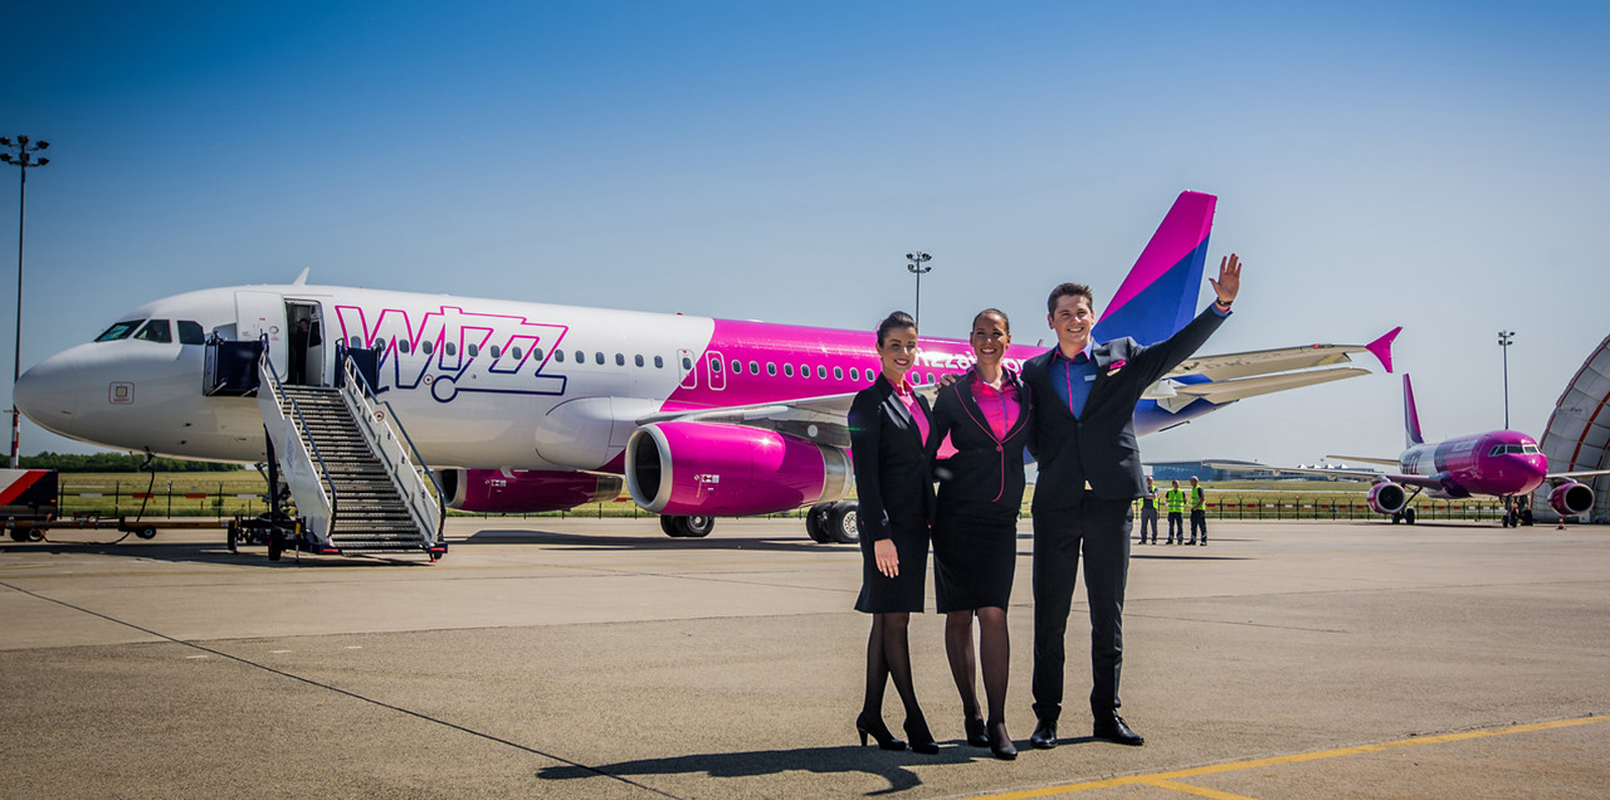 Авиакомпания wizzair. Wizz Air самолеты. Венгерская авиакомпания Wizzair. Wizz Air lowcoster. Авиакомпания Wizz Air полет.